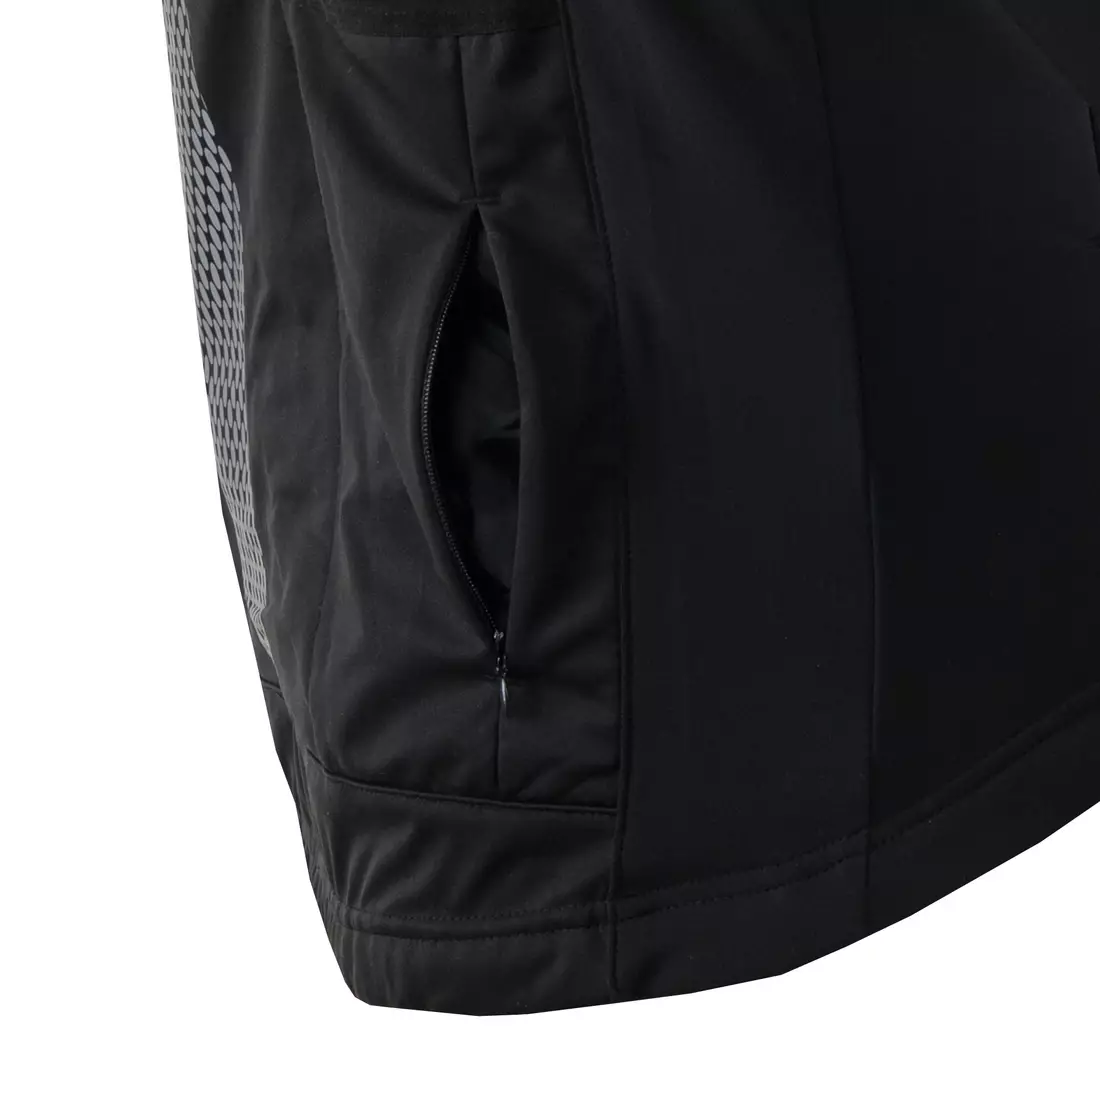 KAYMAQ JWS-004 pánska zimná cyklistická bunda softshell fluo žlto-čierna